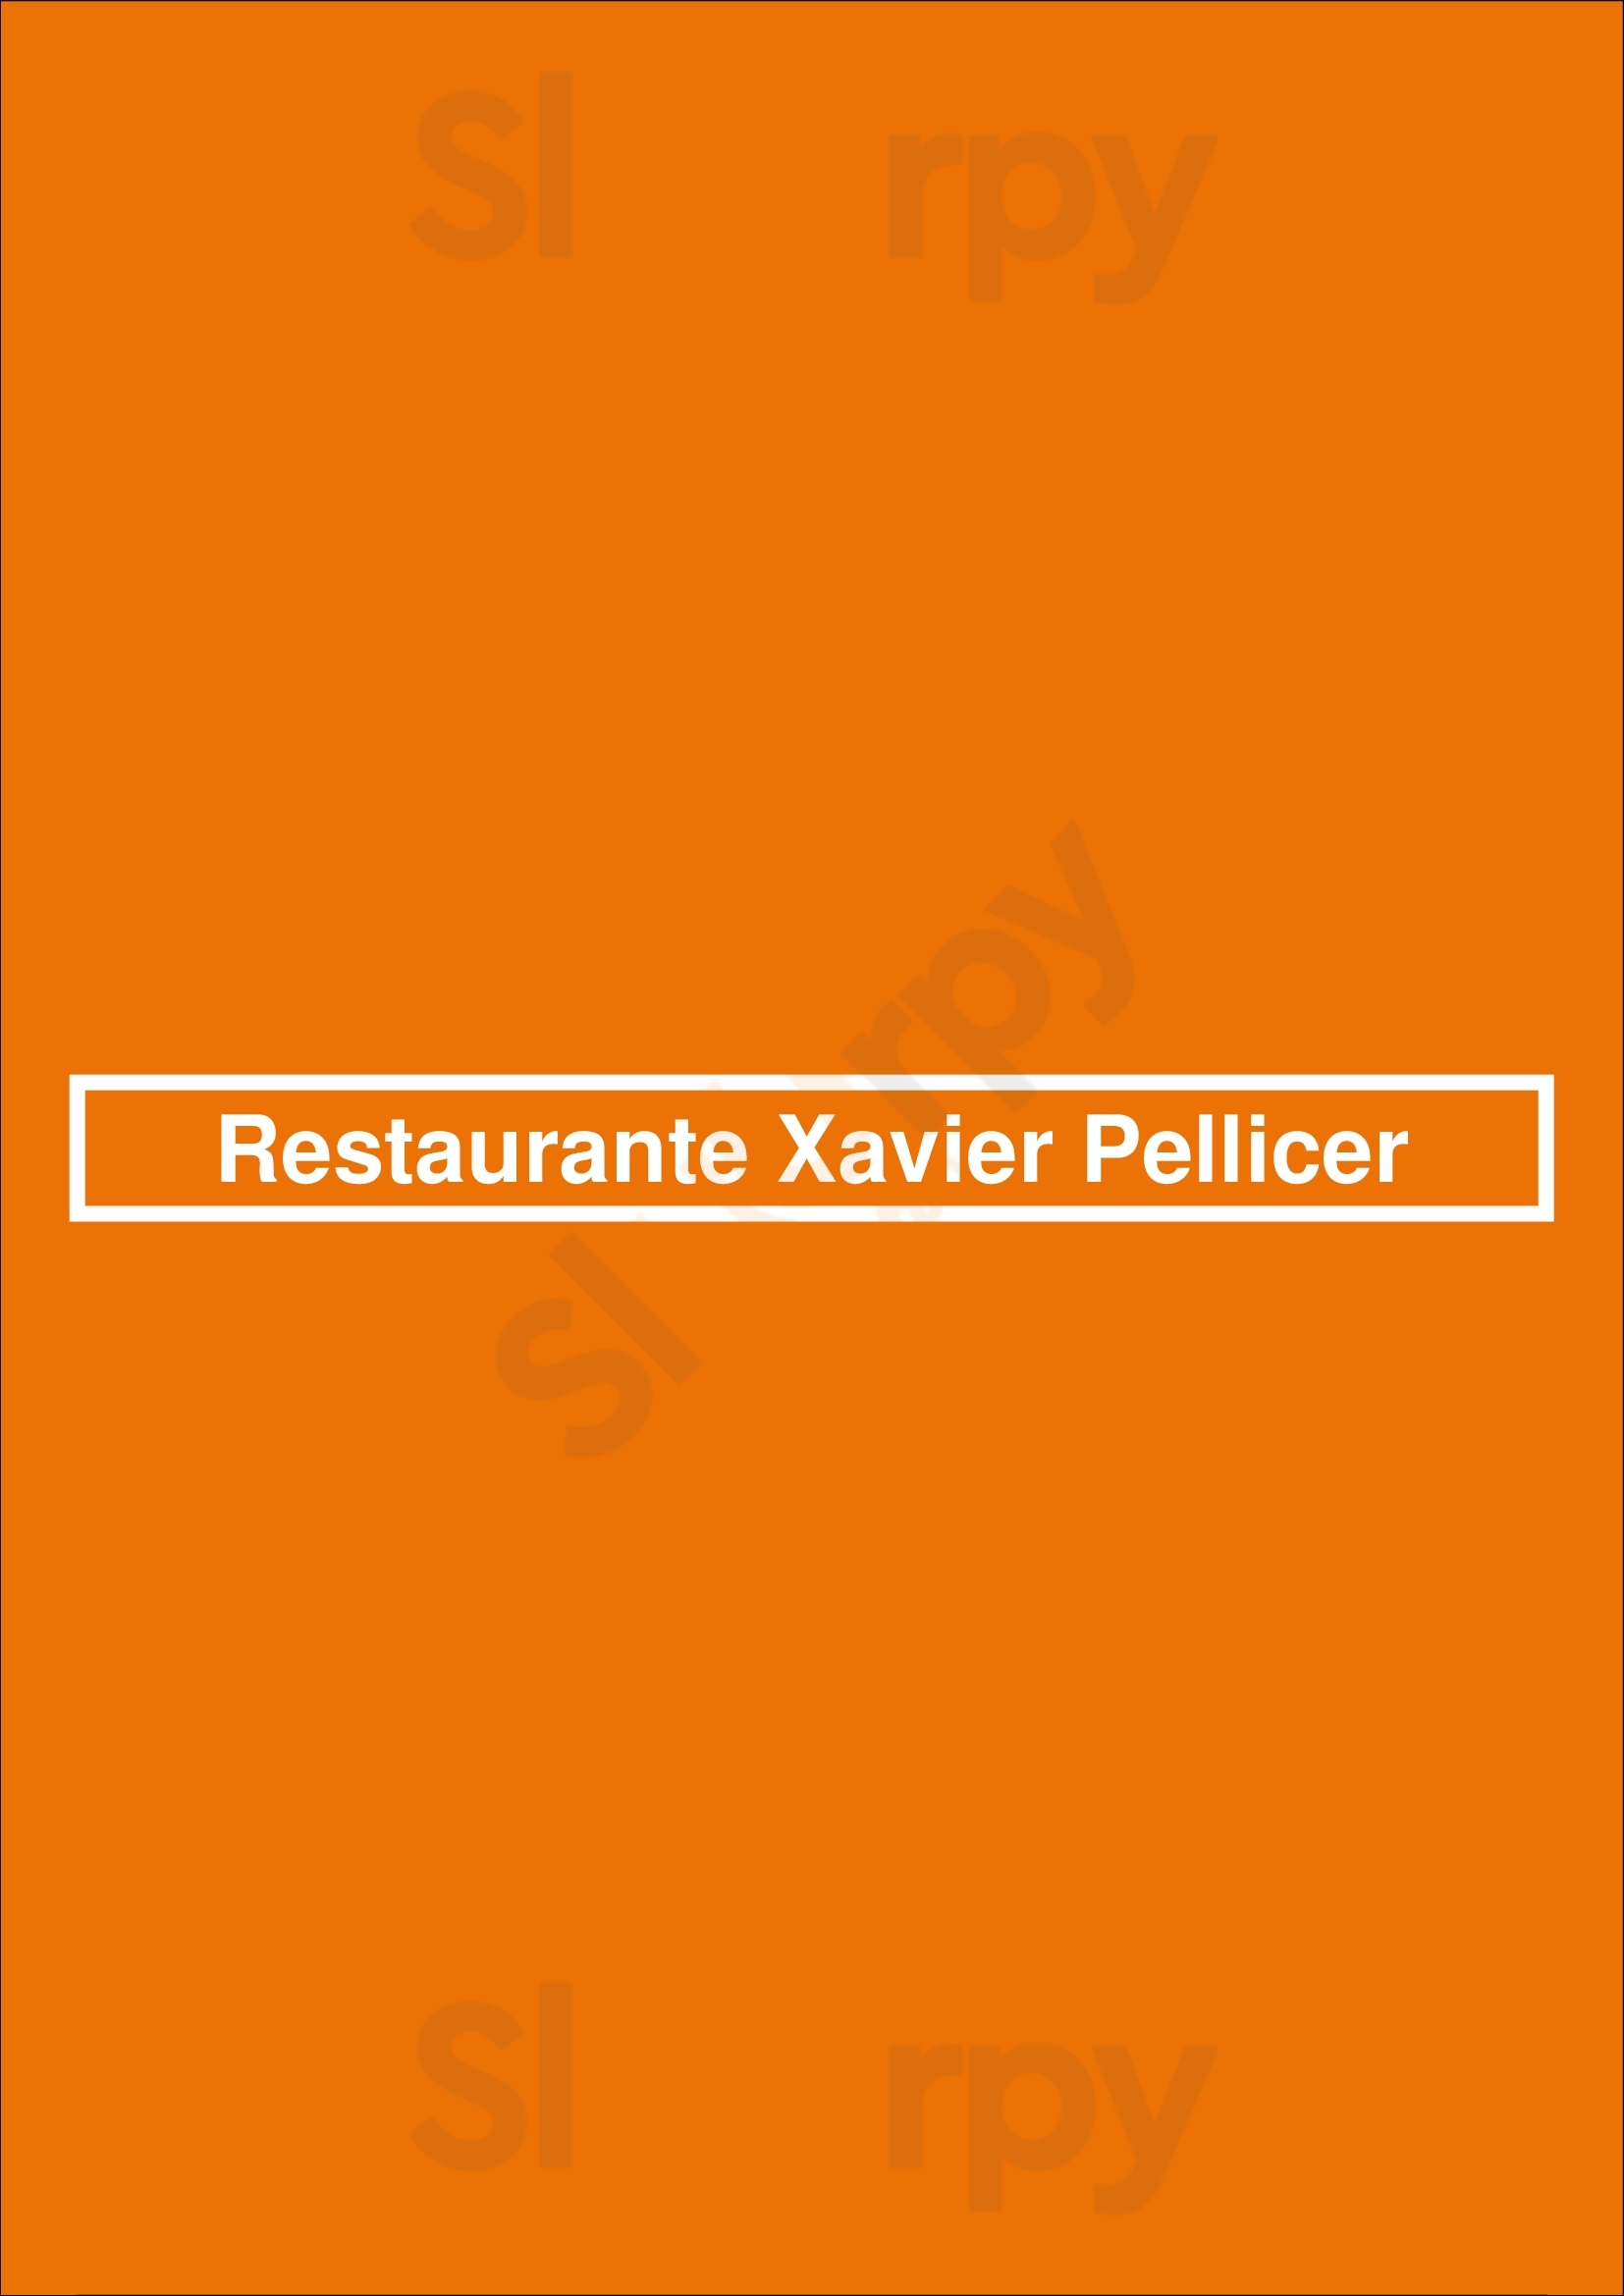 Restaurante Xavier Pellicer Barcelona Menu - 1